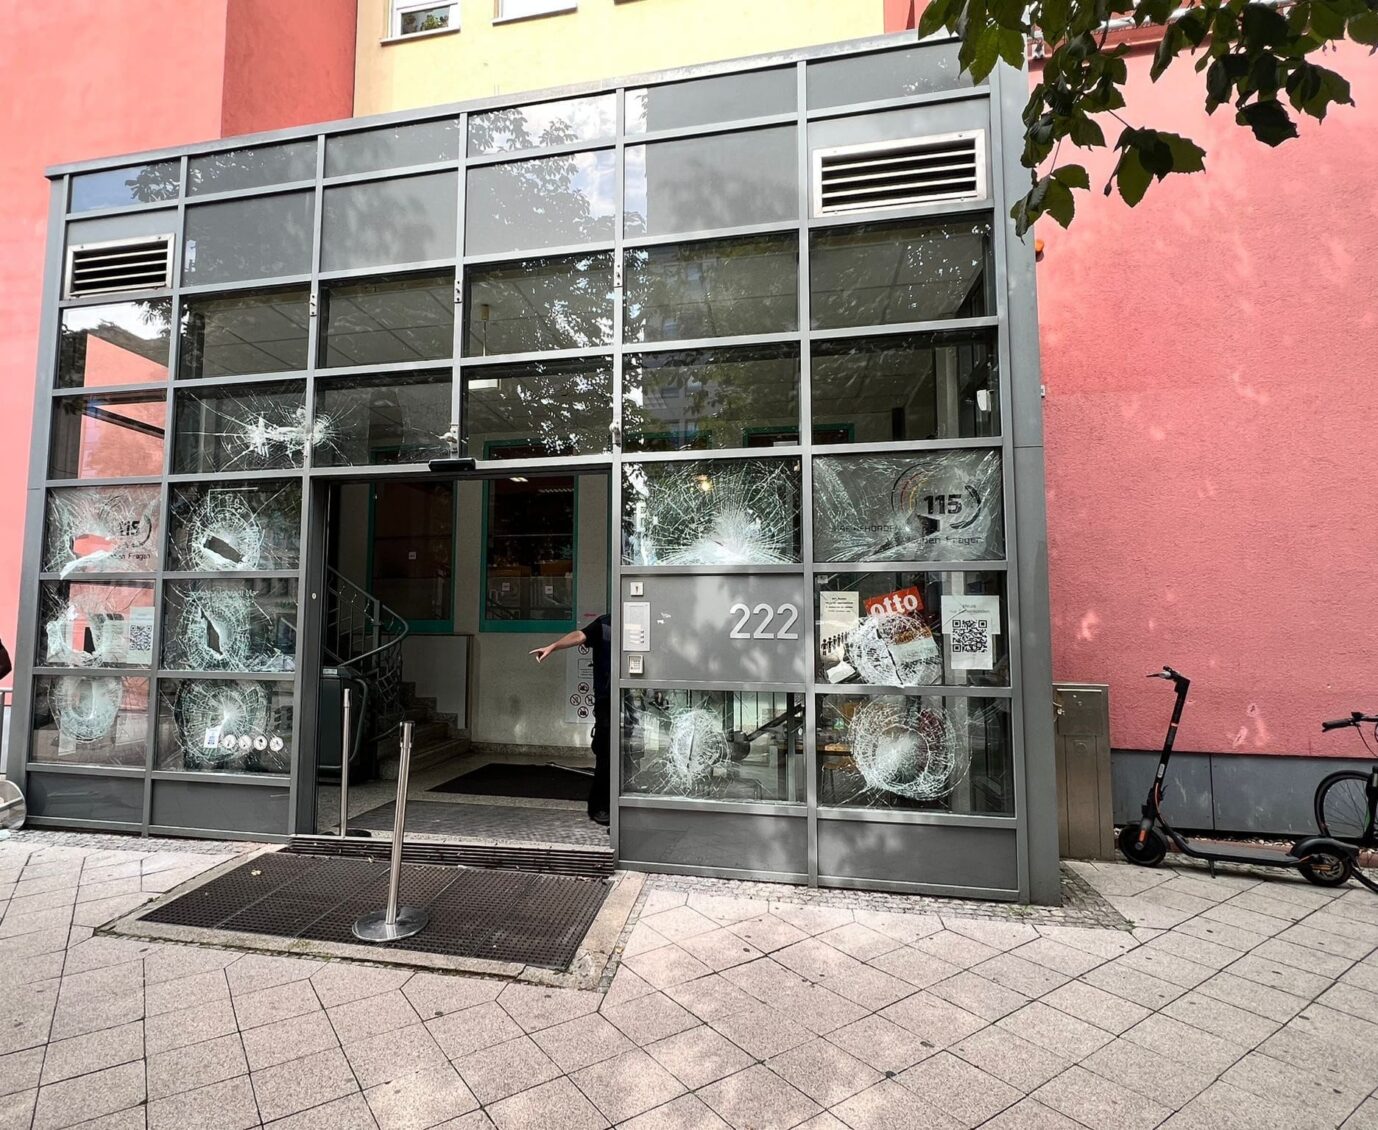 Der verwüstete Eingangsbereich der Ausländerbehörde Magdeburg nach der Attacke des Asylbewerbers.